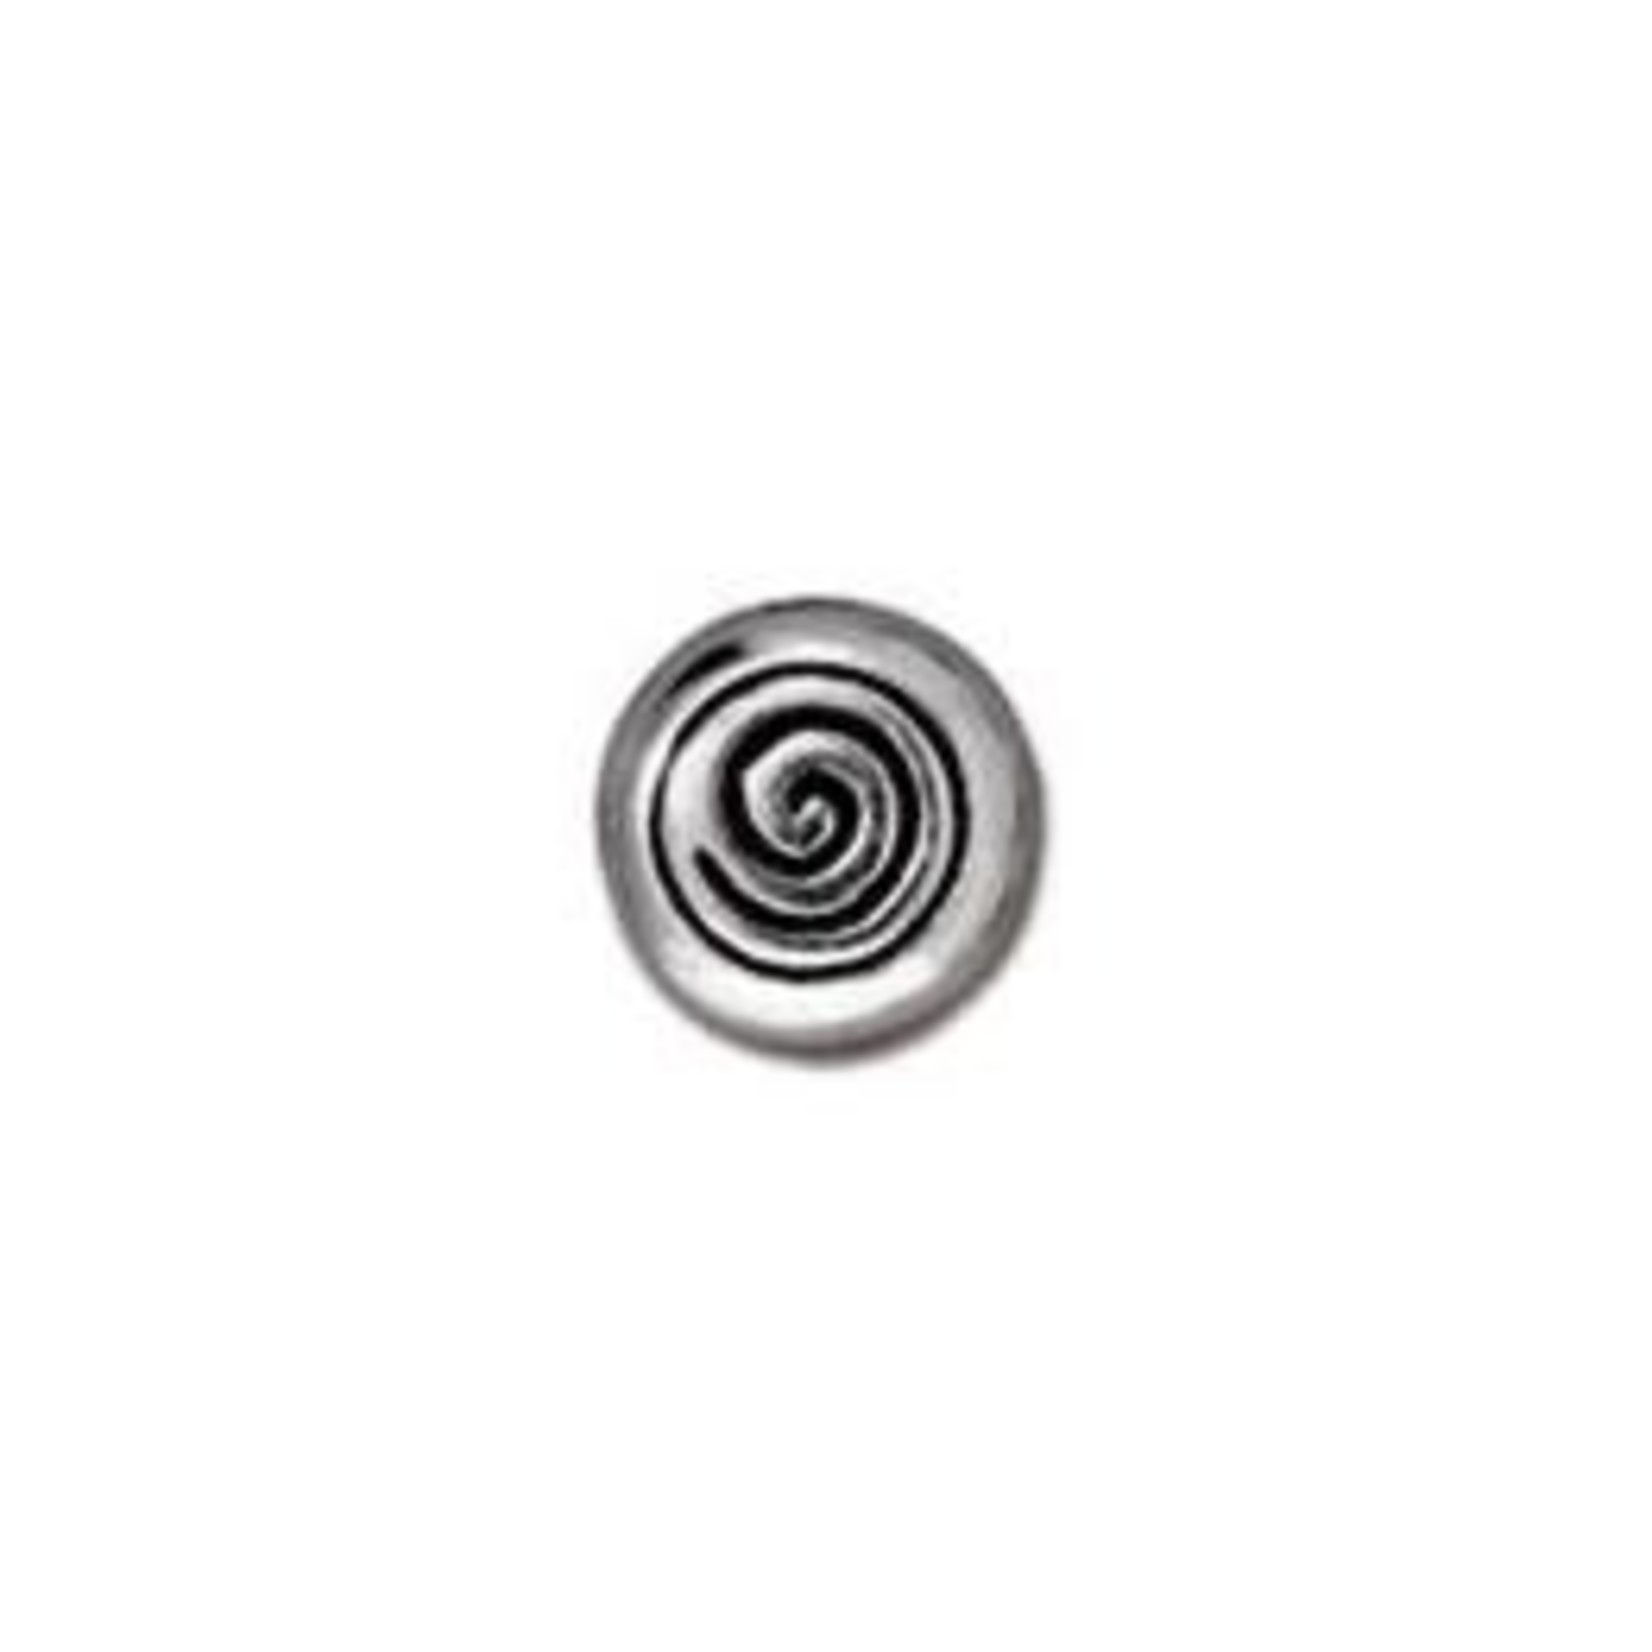 TierraCast SP spiral bead